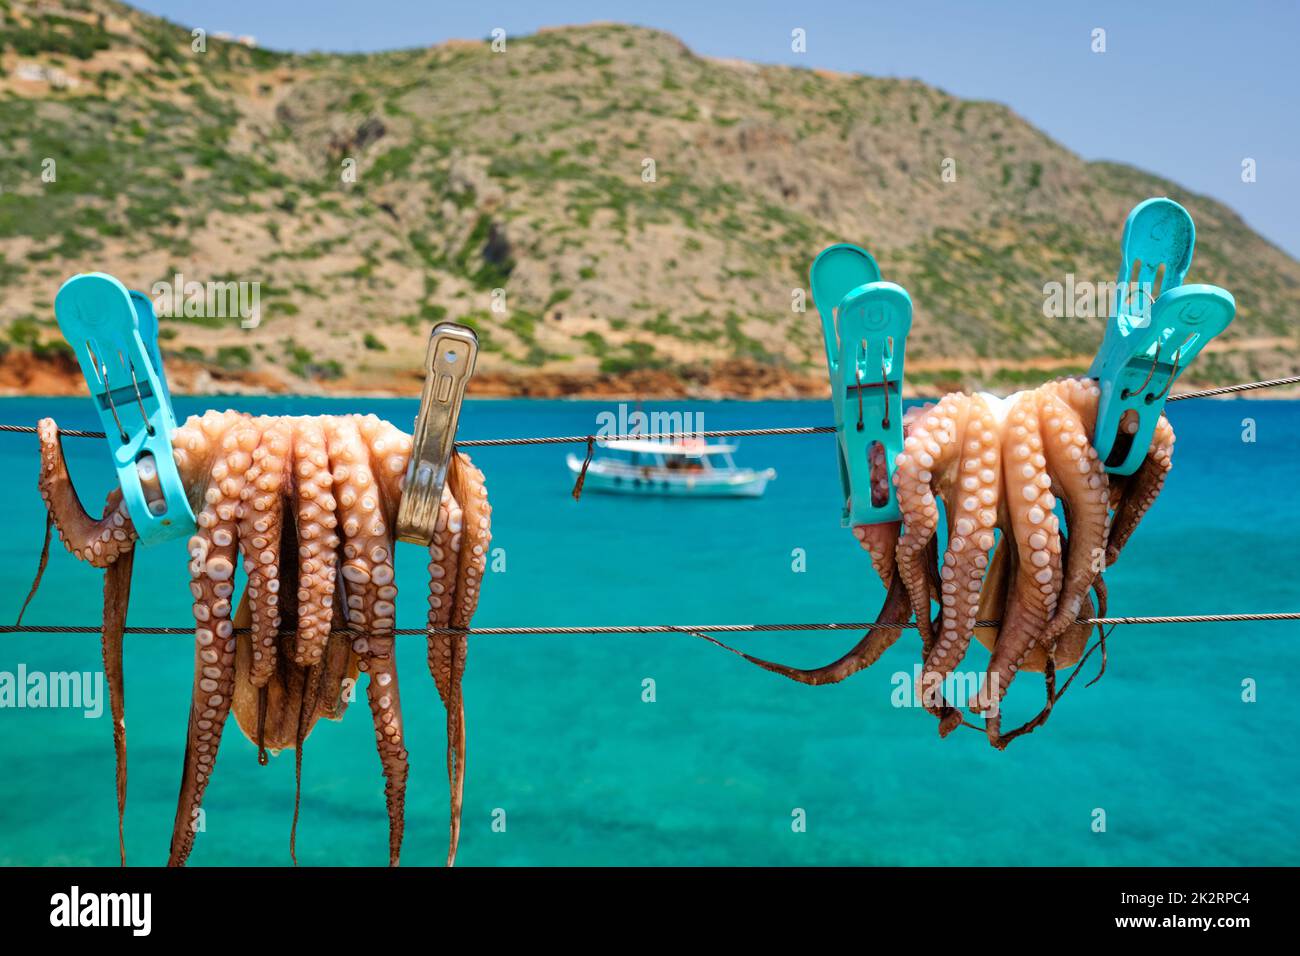 Pulpo fresco secado sobre cuerda al sol con mar Egeo turquesa sobre fondo, isla Creta, Grecia Foto de stock